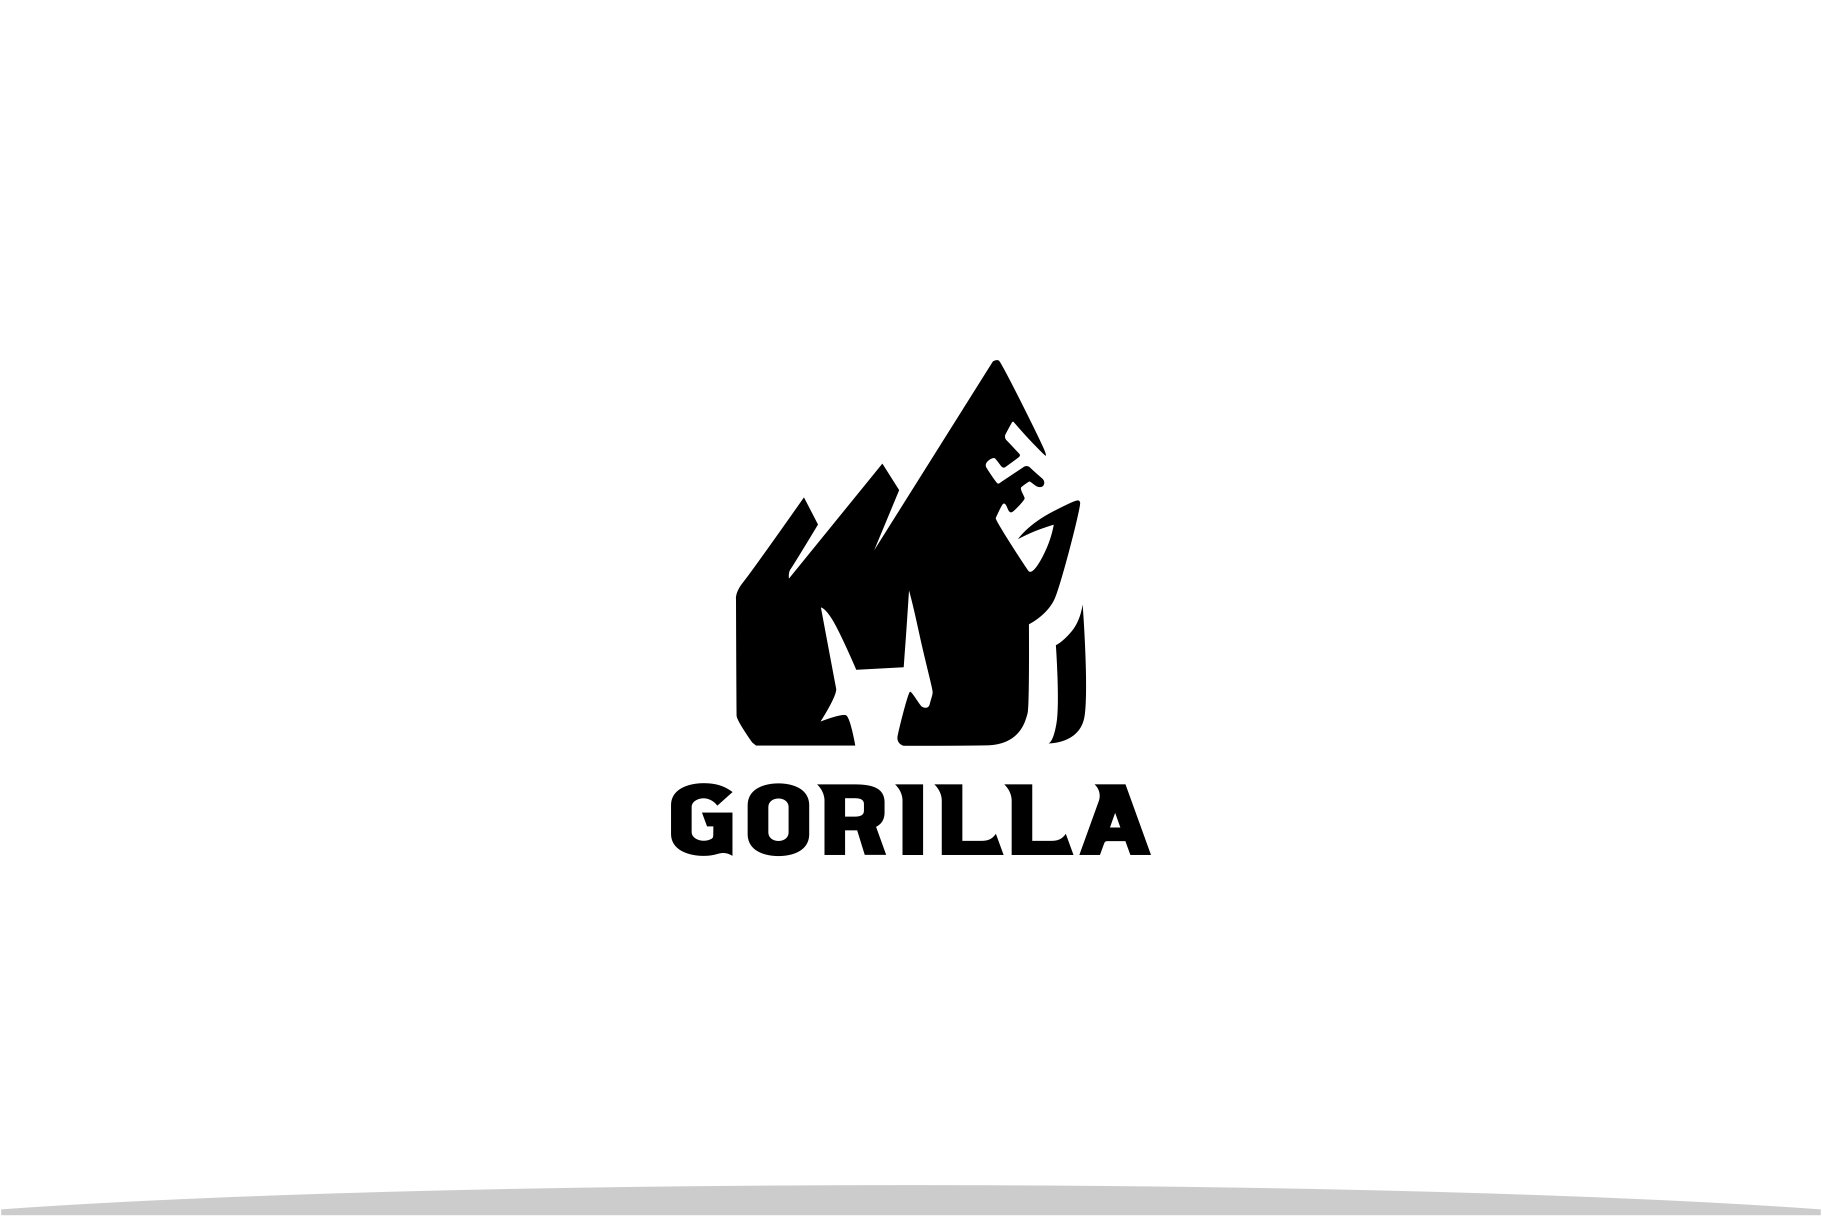 Gorilla Mountain Logo cover image.